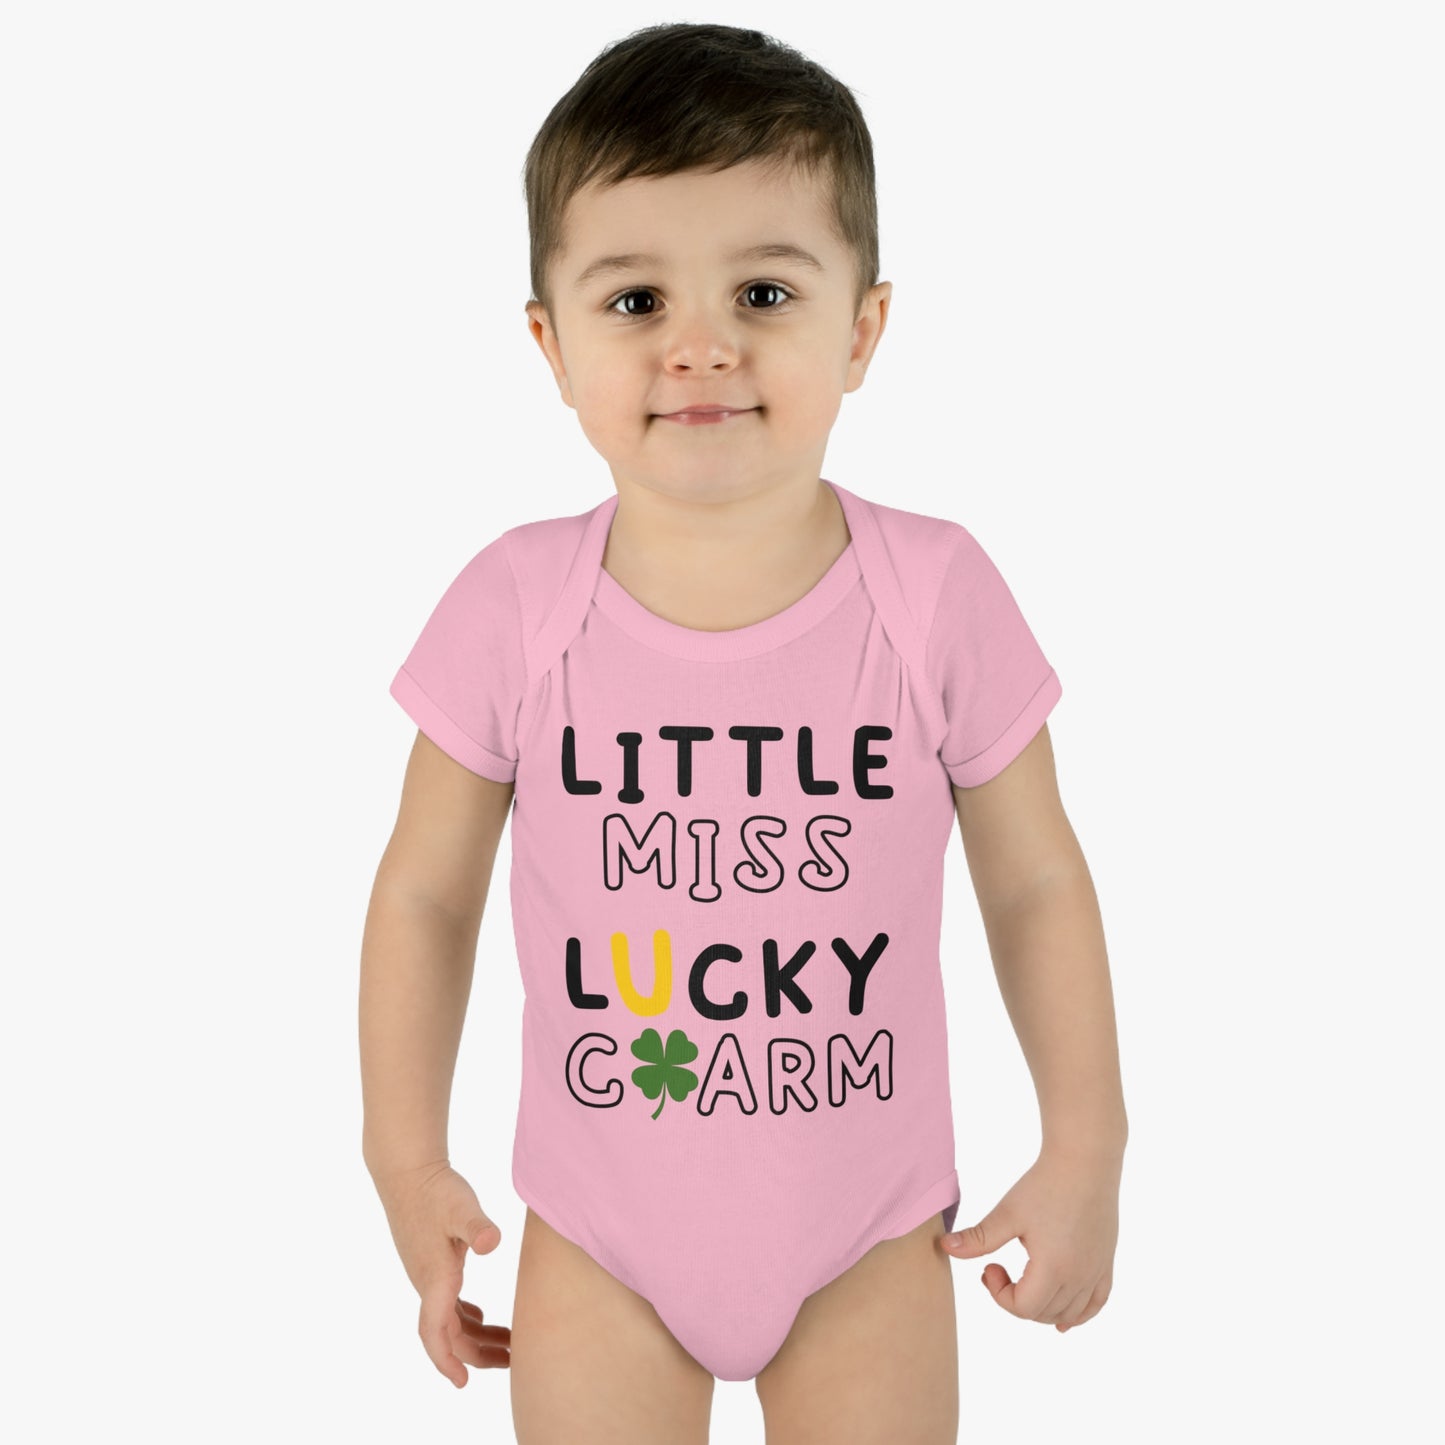 St Patricks Little Miss Lucky Charm Infant Onesie Baby Rib Bodysuit